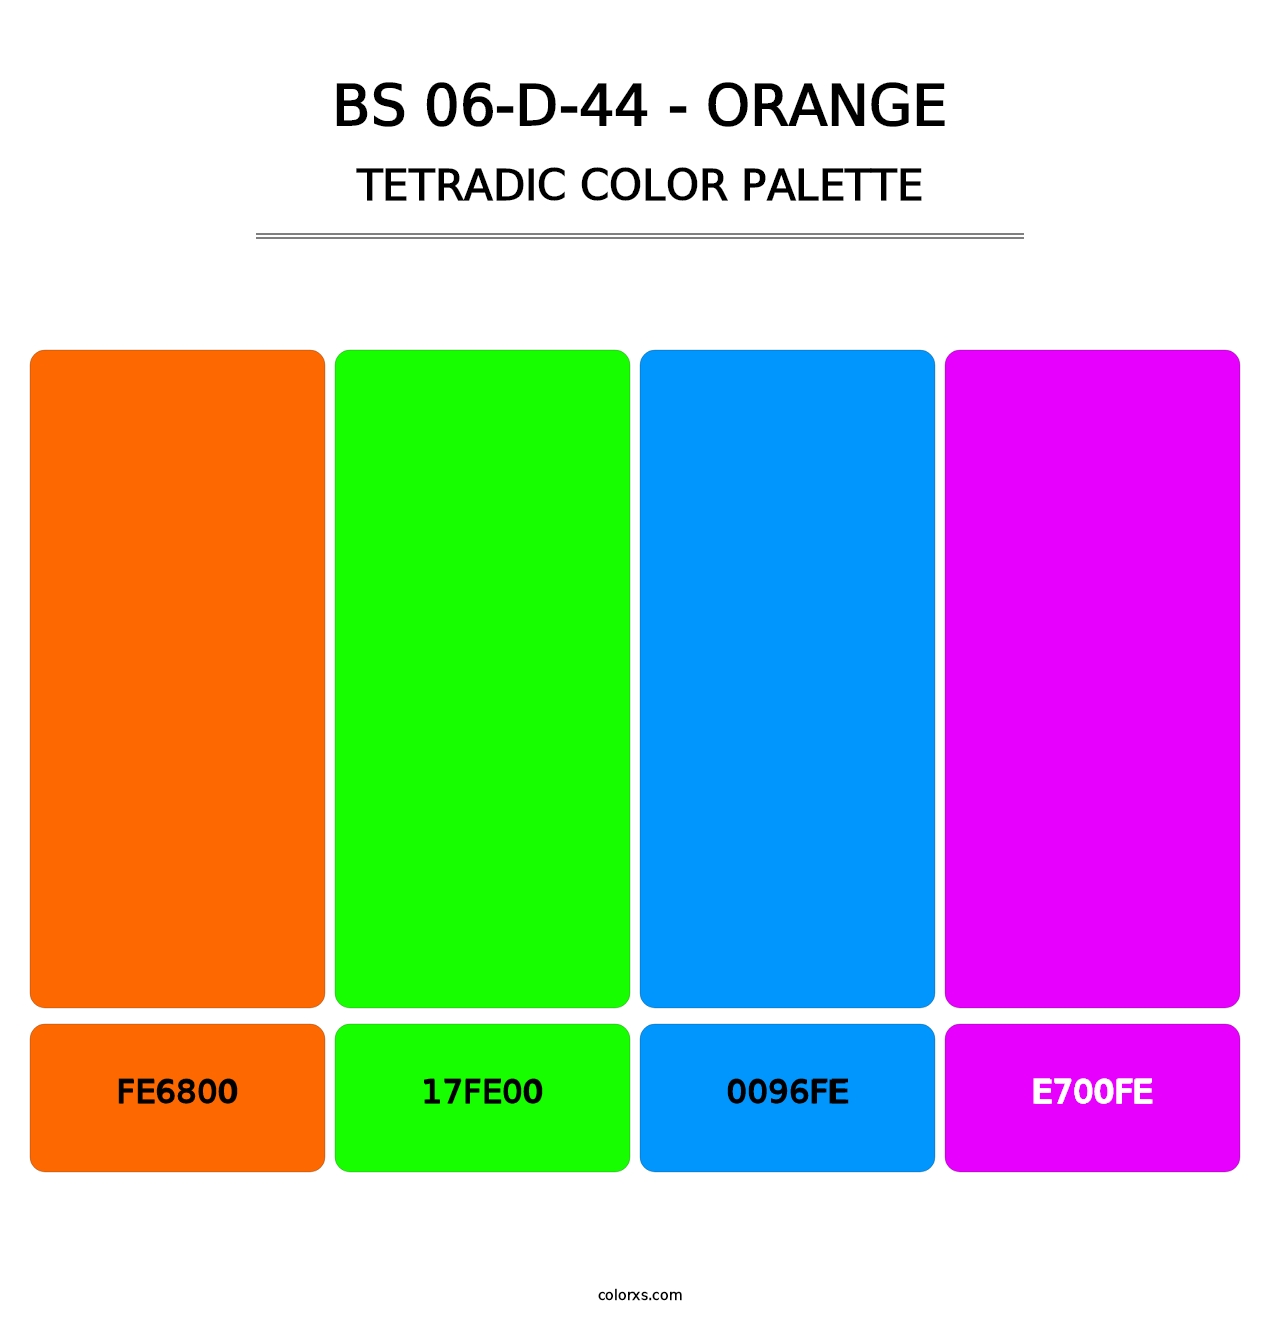 BS 06-D-44 - Orange - Tetradic Color Palette